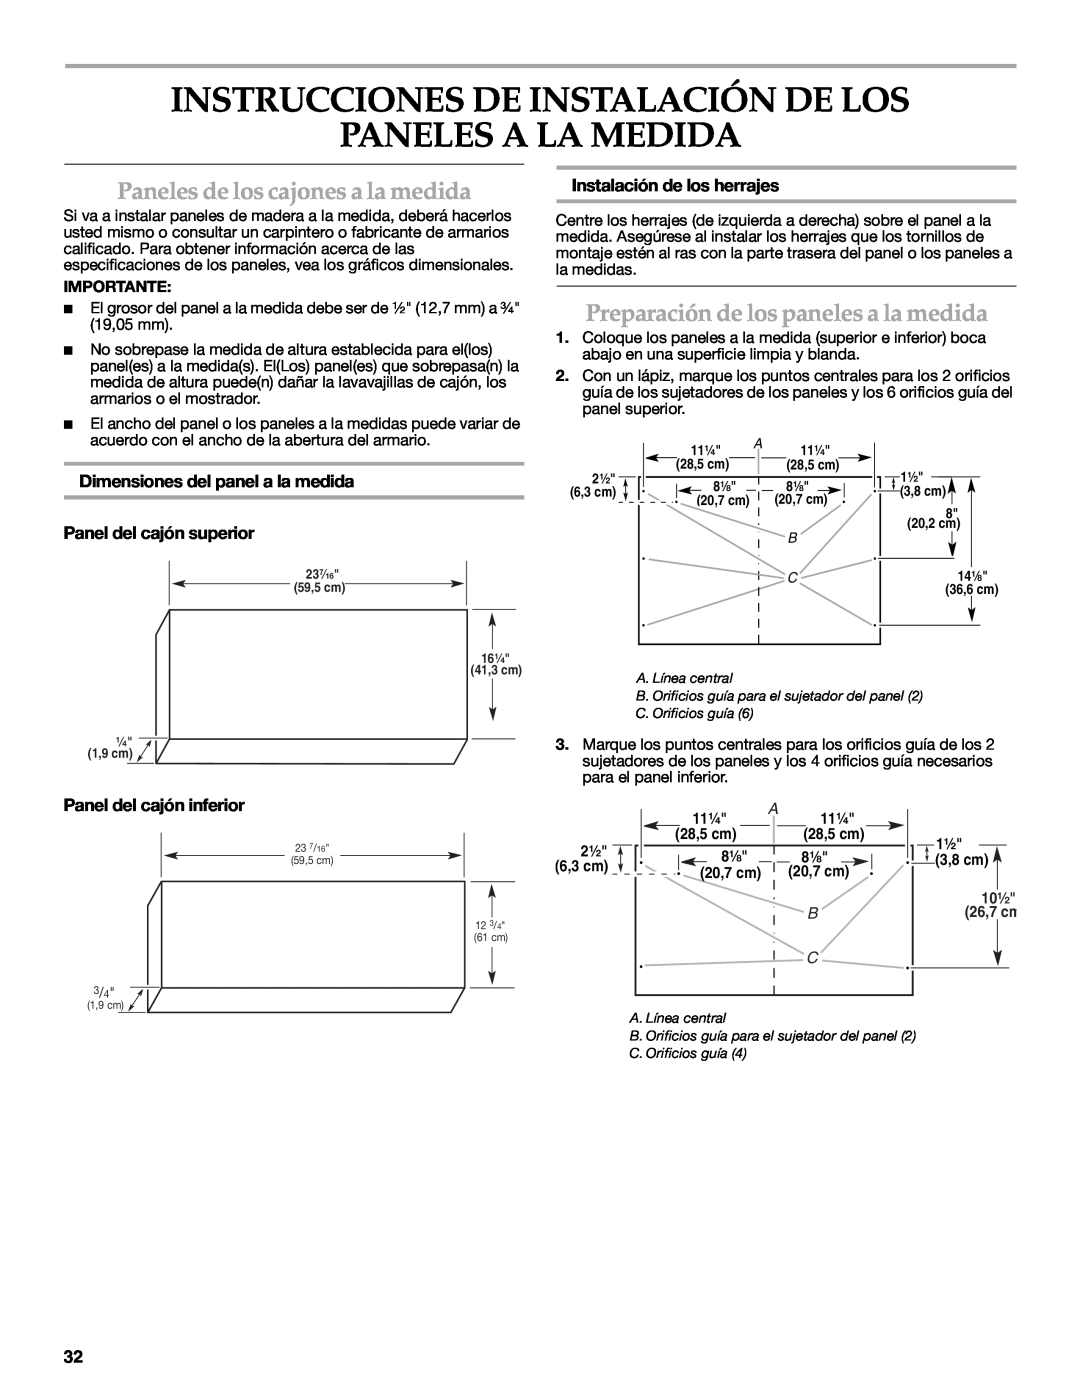 KitchenAid W10216167A Instrucciones De Instalación De Los Paneles A La Medida, Paneles de los cajones a la medida, 28,5 cm 